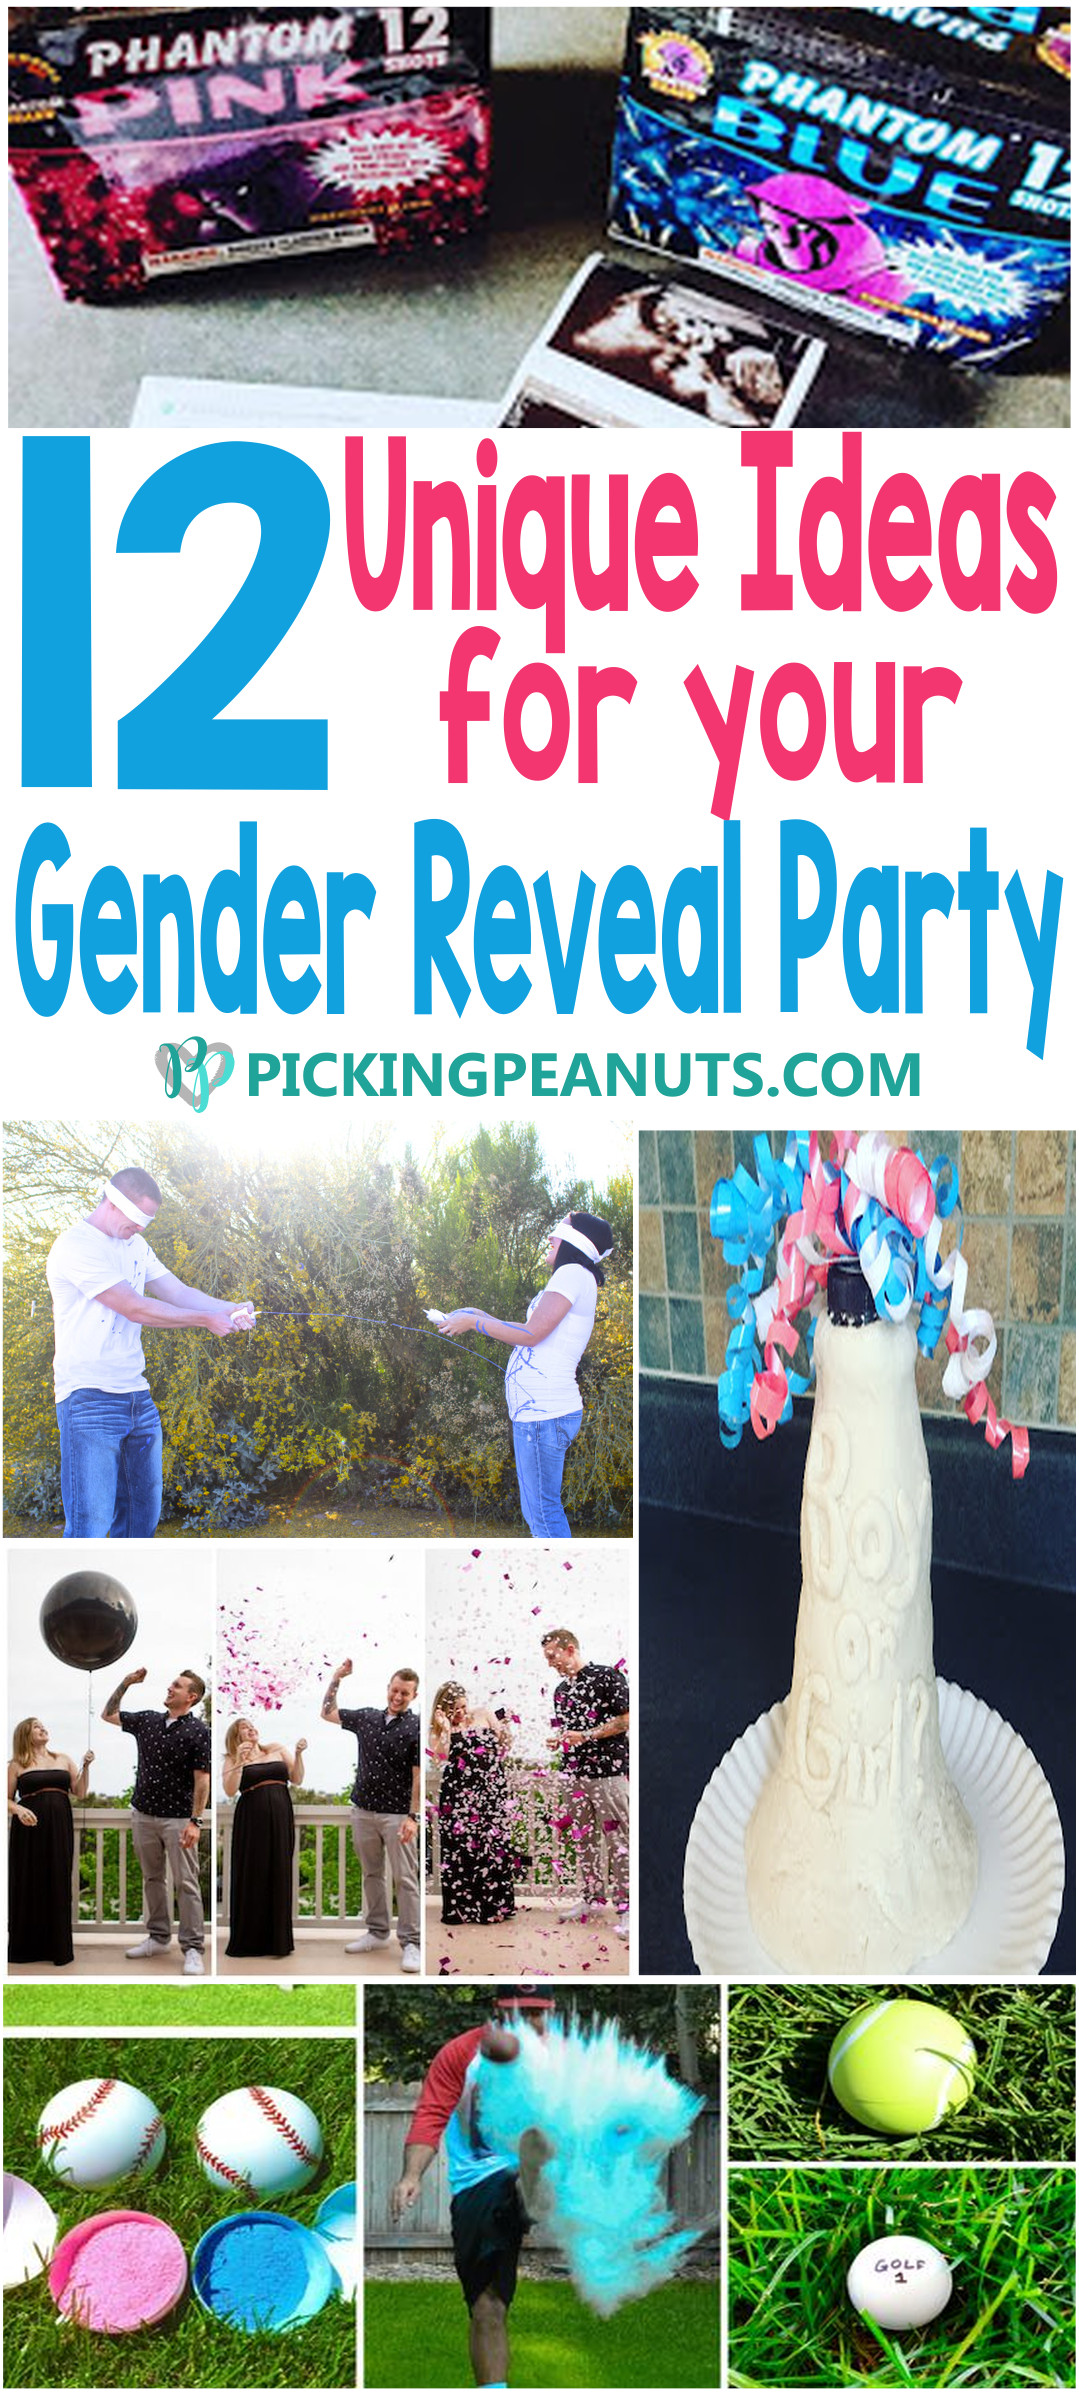 Unique Gender Reveal Party Ideas
 12 Unique Gender Reveal Party Ideas PickingPeanuts